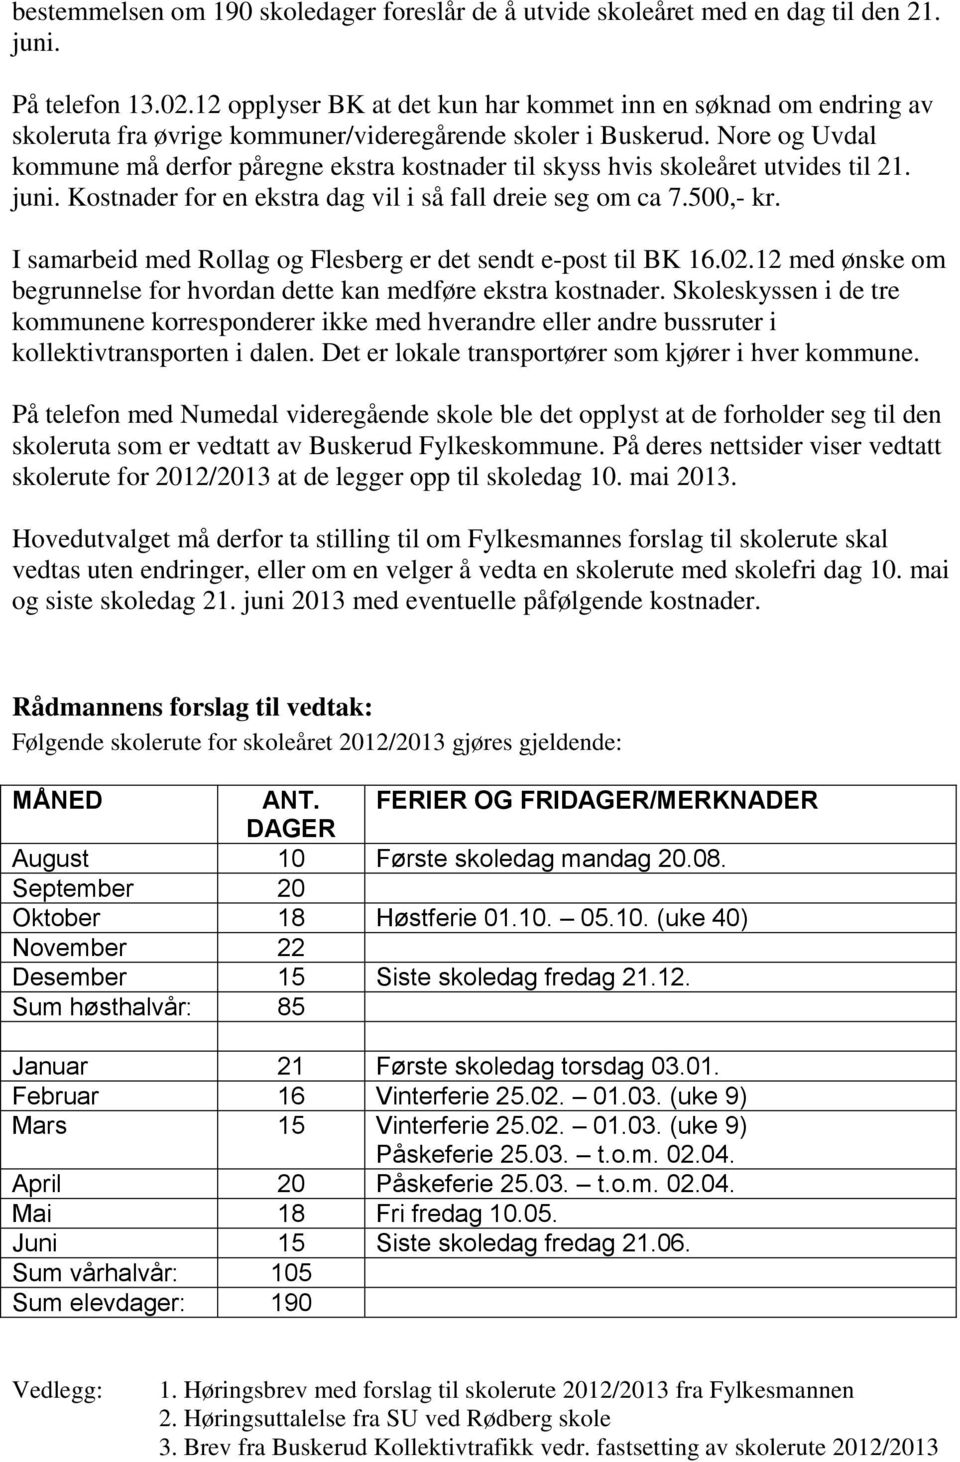 Nore og Uvdal kommune må derfor påregne ekstra kostnader til skyss hvis skoleåret utvides til 21. juni. Kostnader for en ekstra dag vil i så fall dreie seg om ca 7.500,- kr.